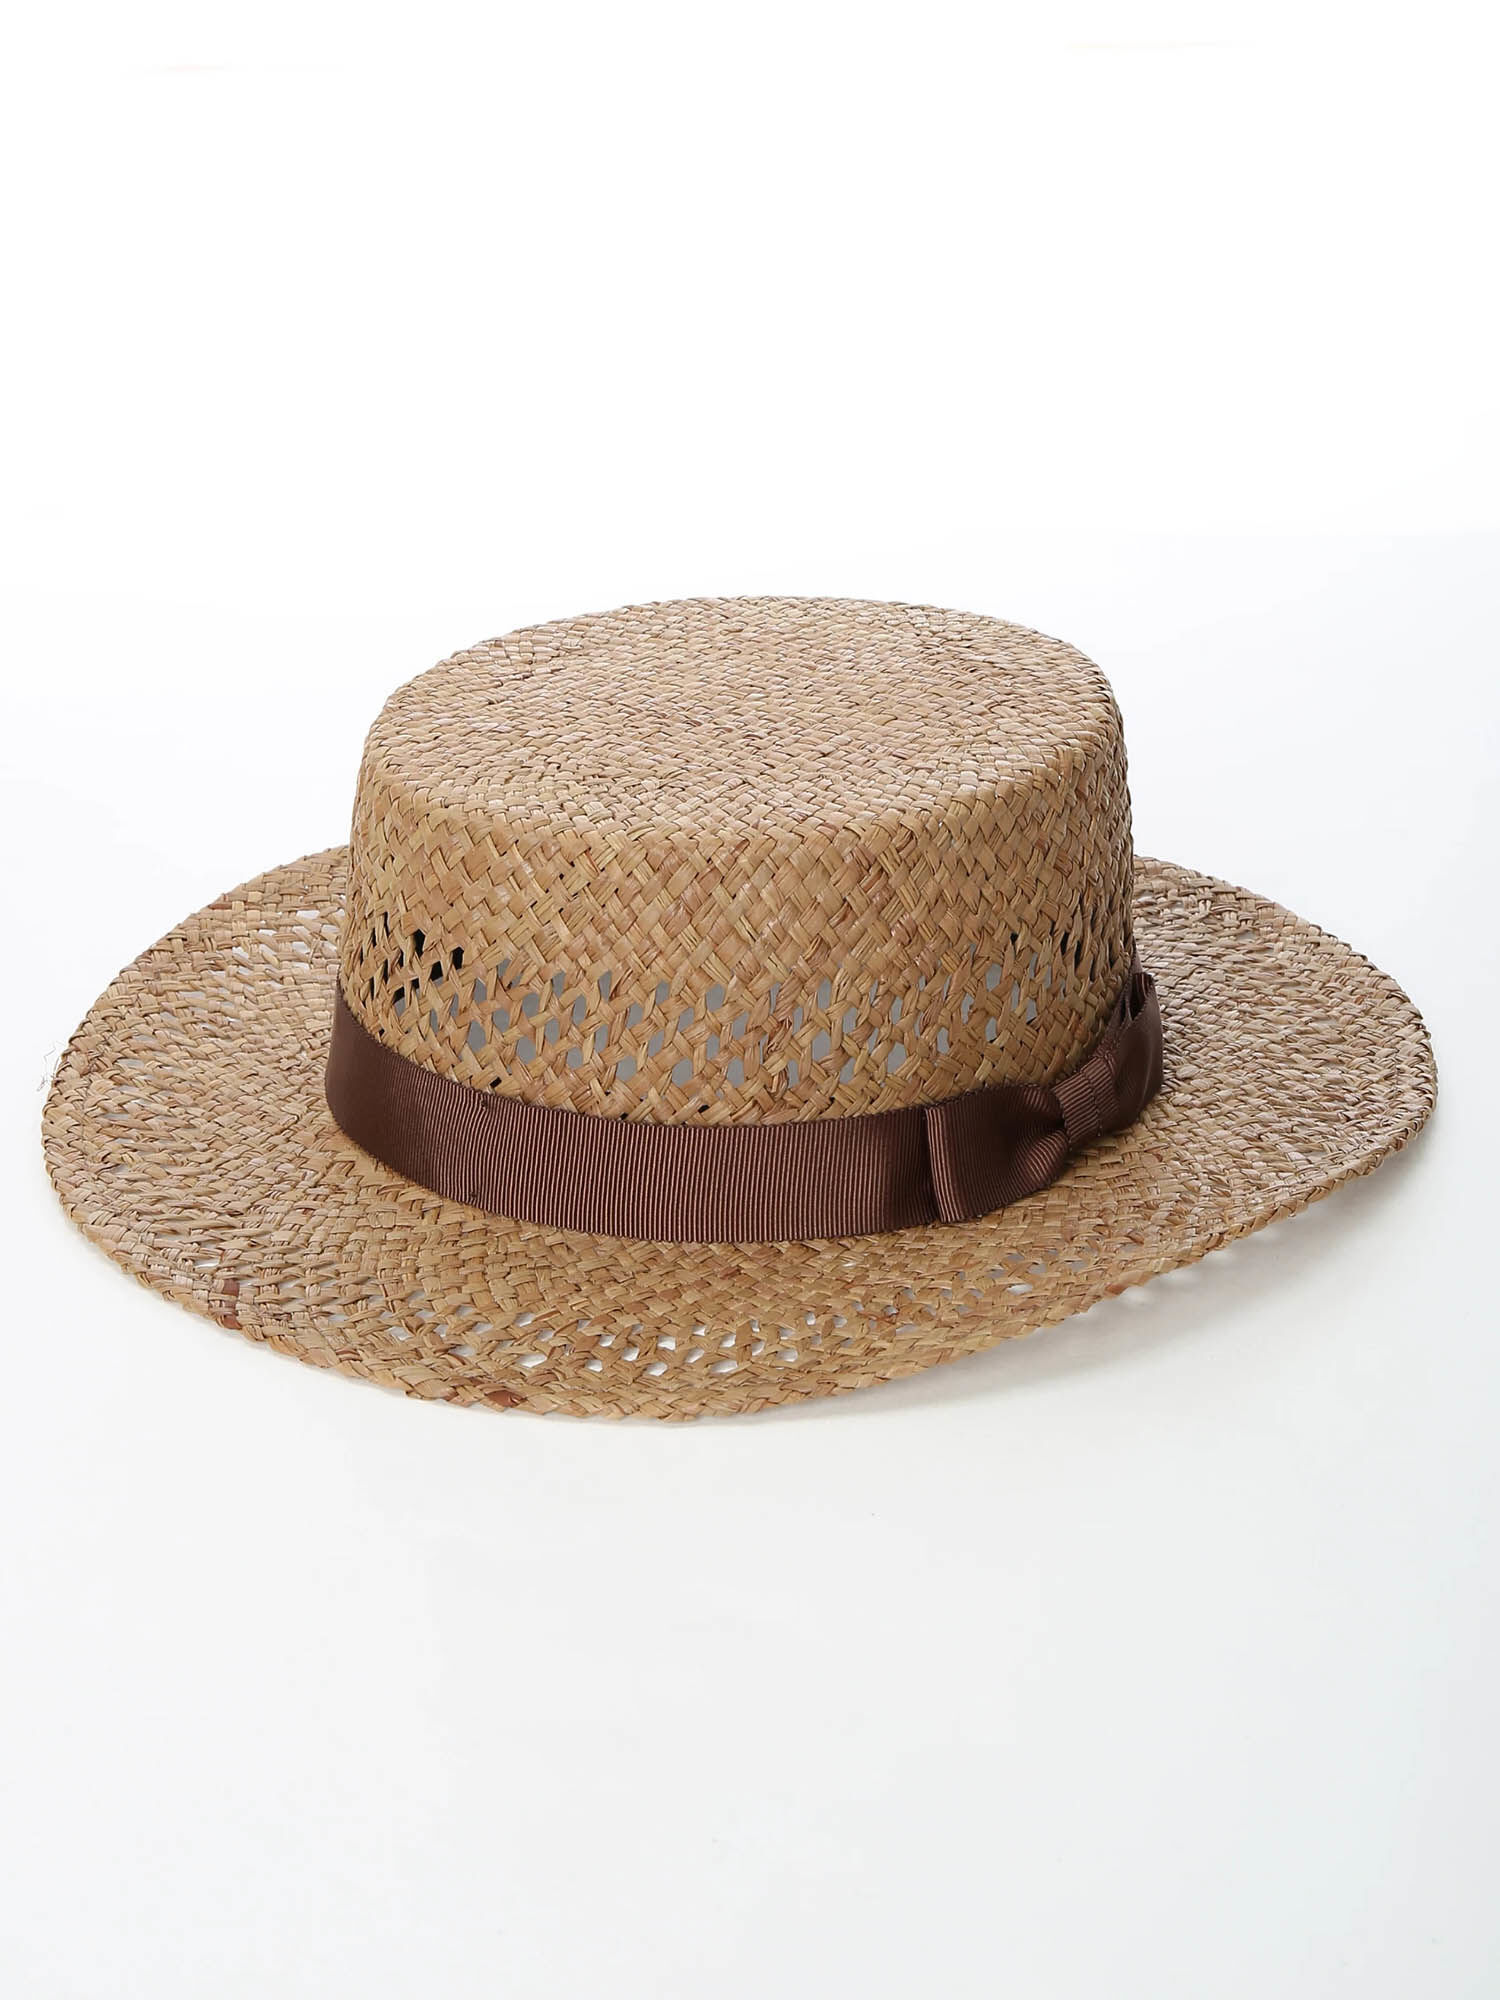 帽 カンカン 麦わら帽子(ストローハット)とカンカン帽とパナマ帽の違いとは?